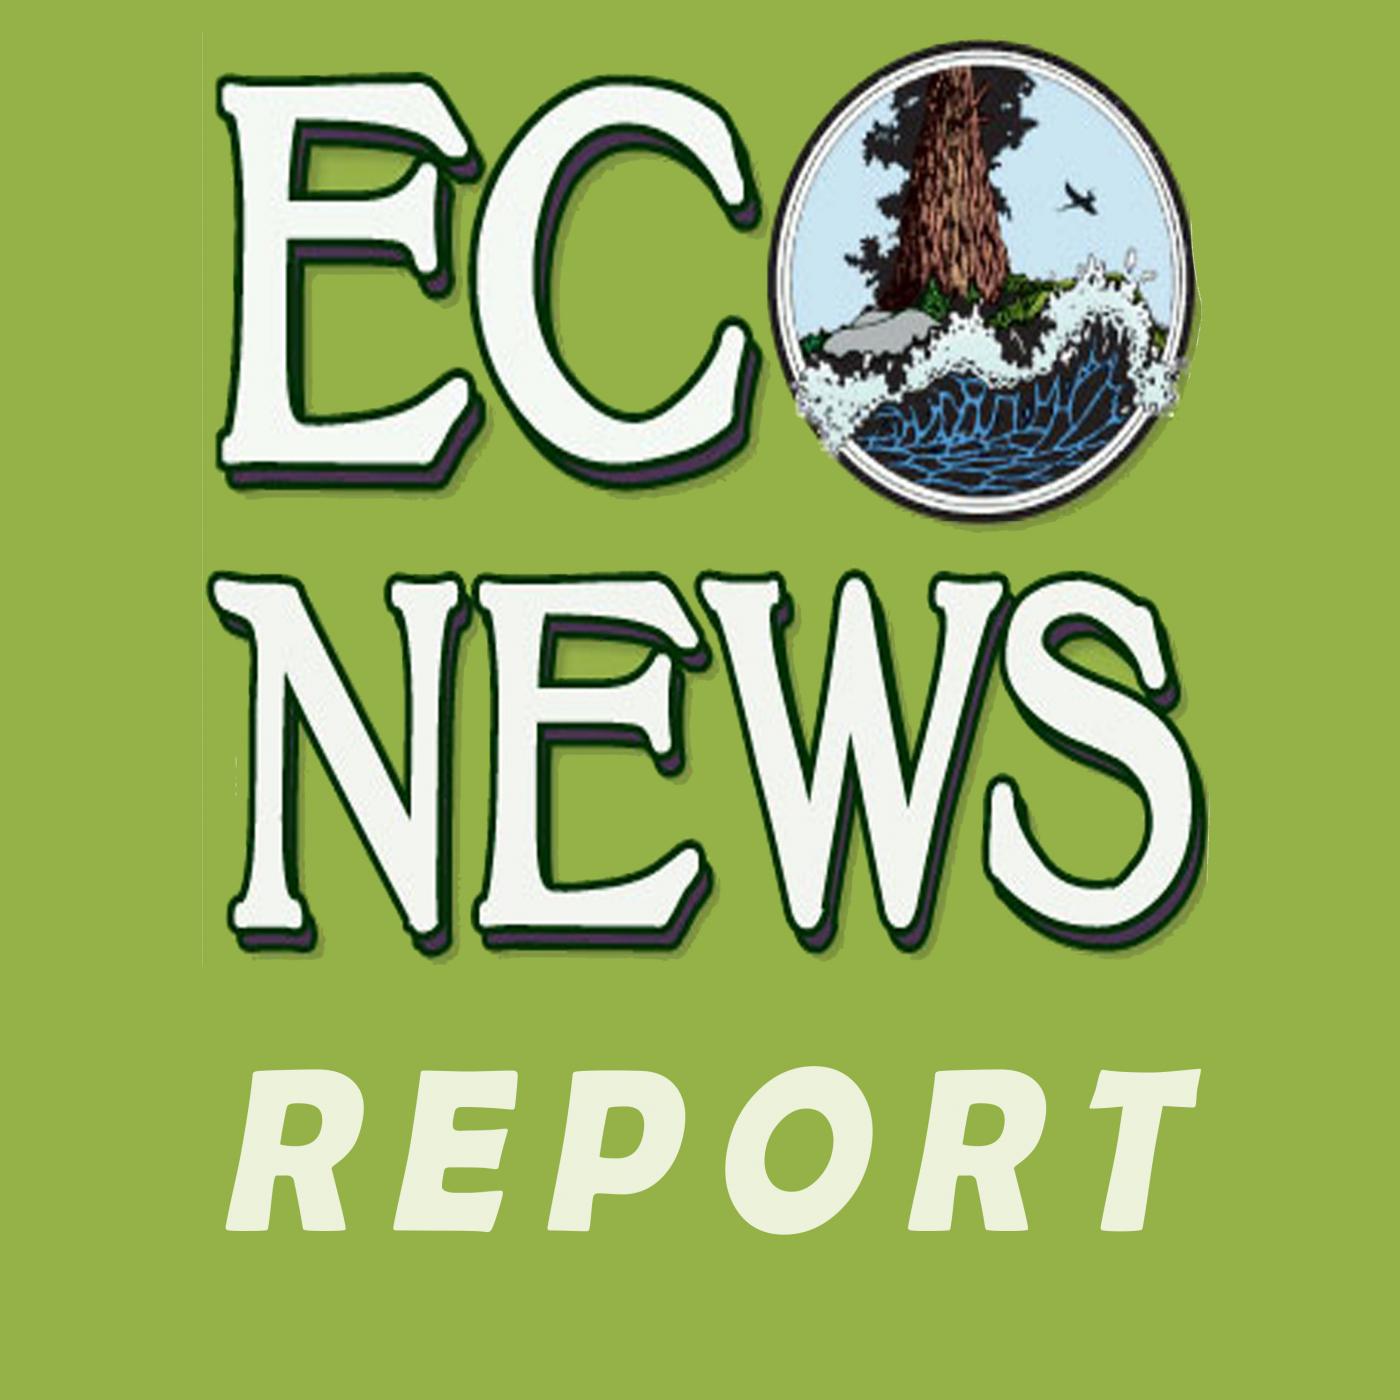 EcoNews Report